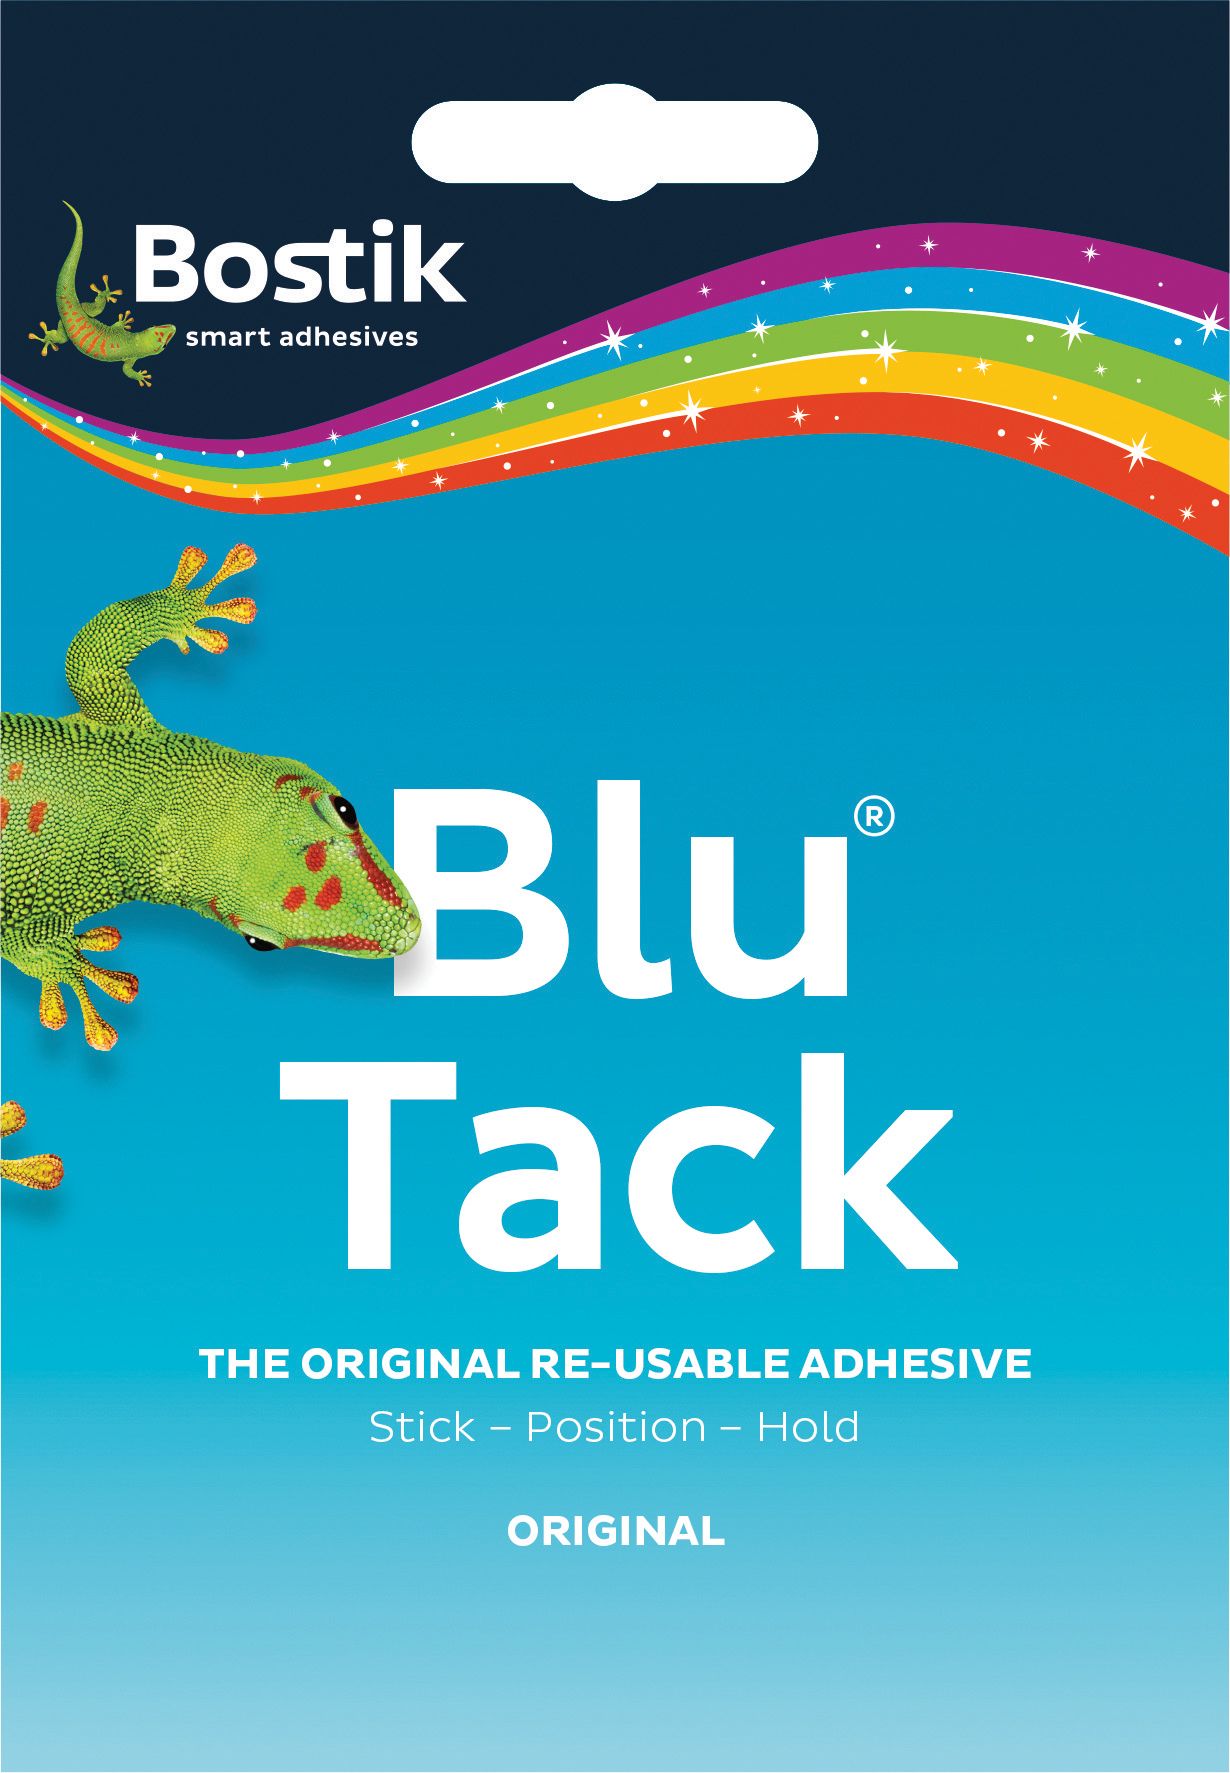 Bostik Blu Tack Adhesive Handy